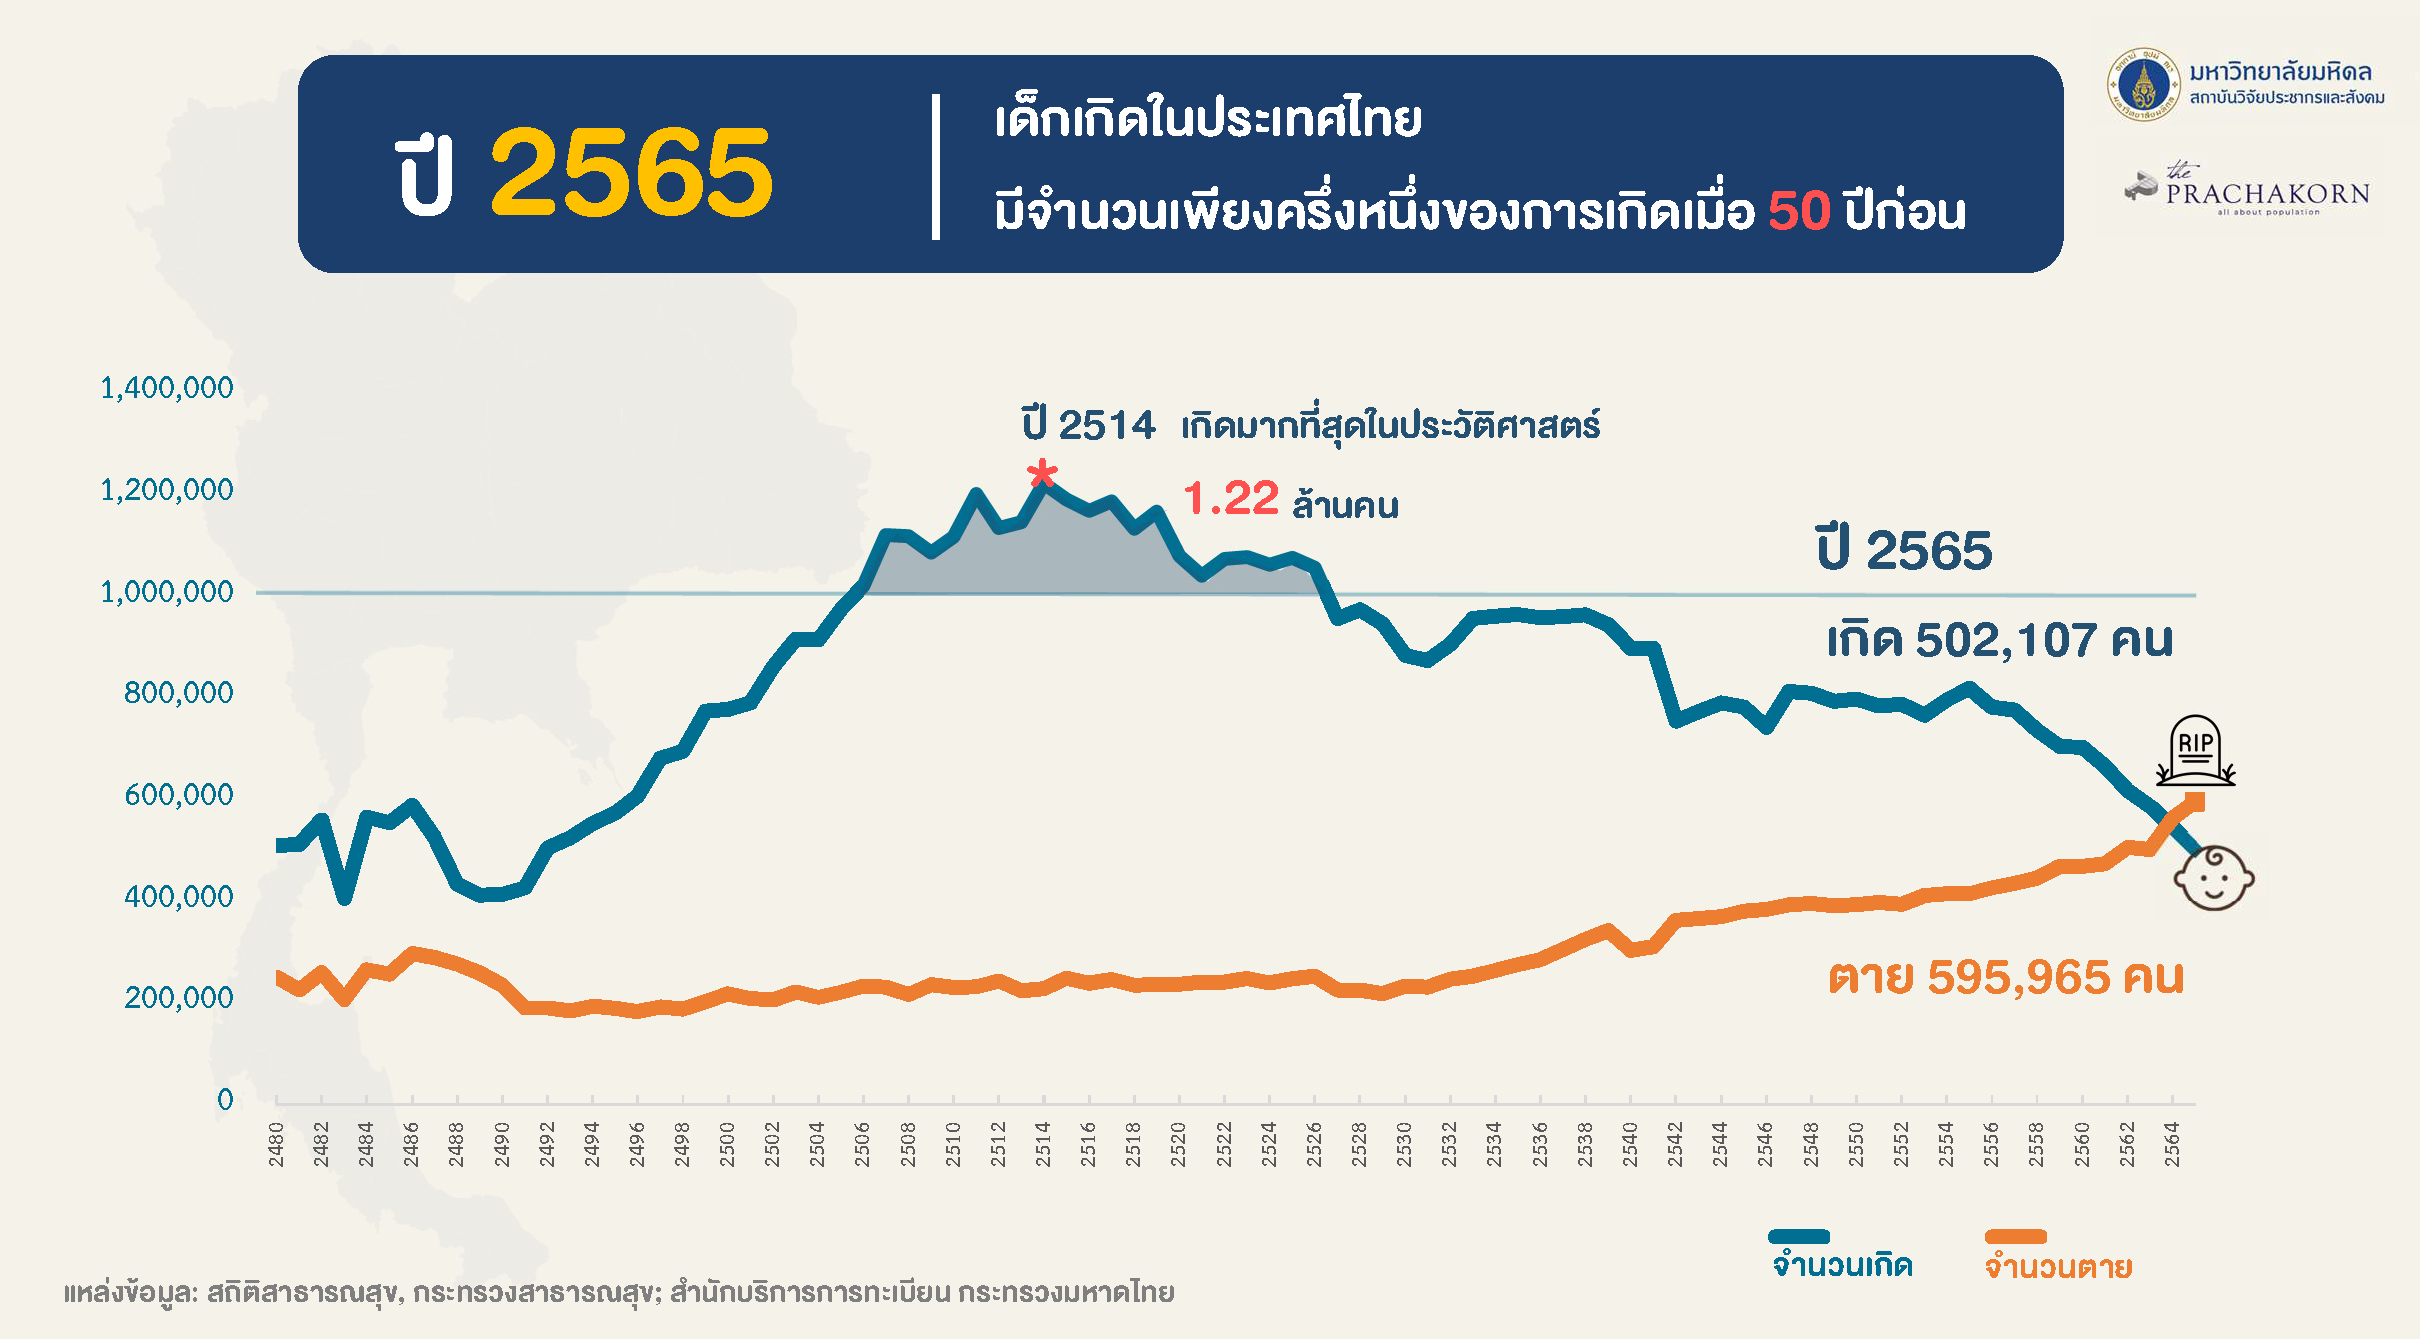 สถาบันวิจัยประชากรและสังคม ม.มหิดล จัดงานแถลงข่าว "จำนวนเกิดในประเทศไทยดิ่งต่ำลงจนน่าตกใจ"